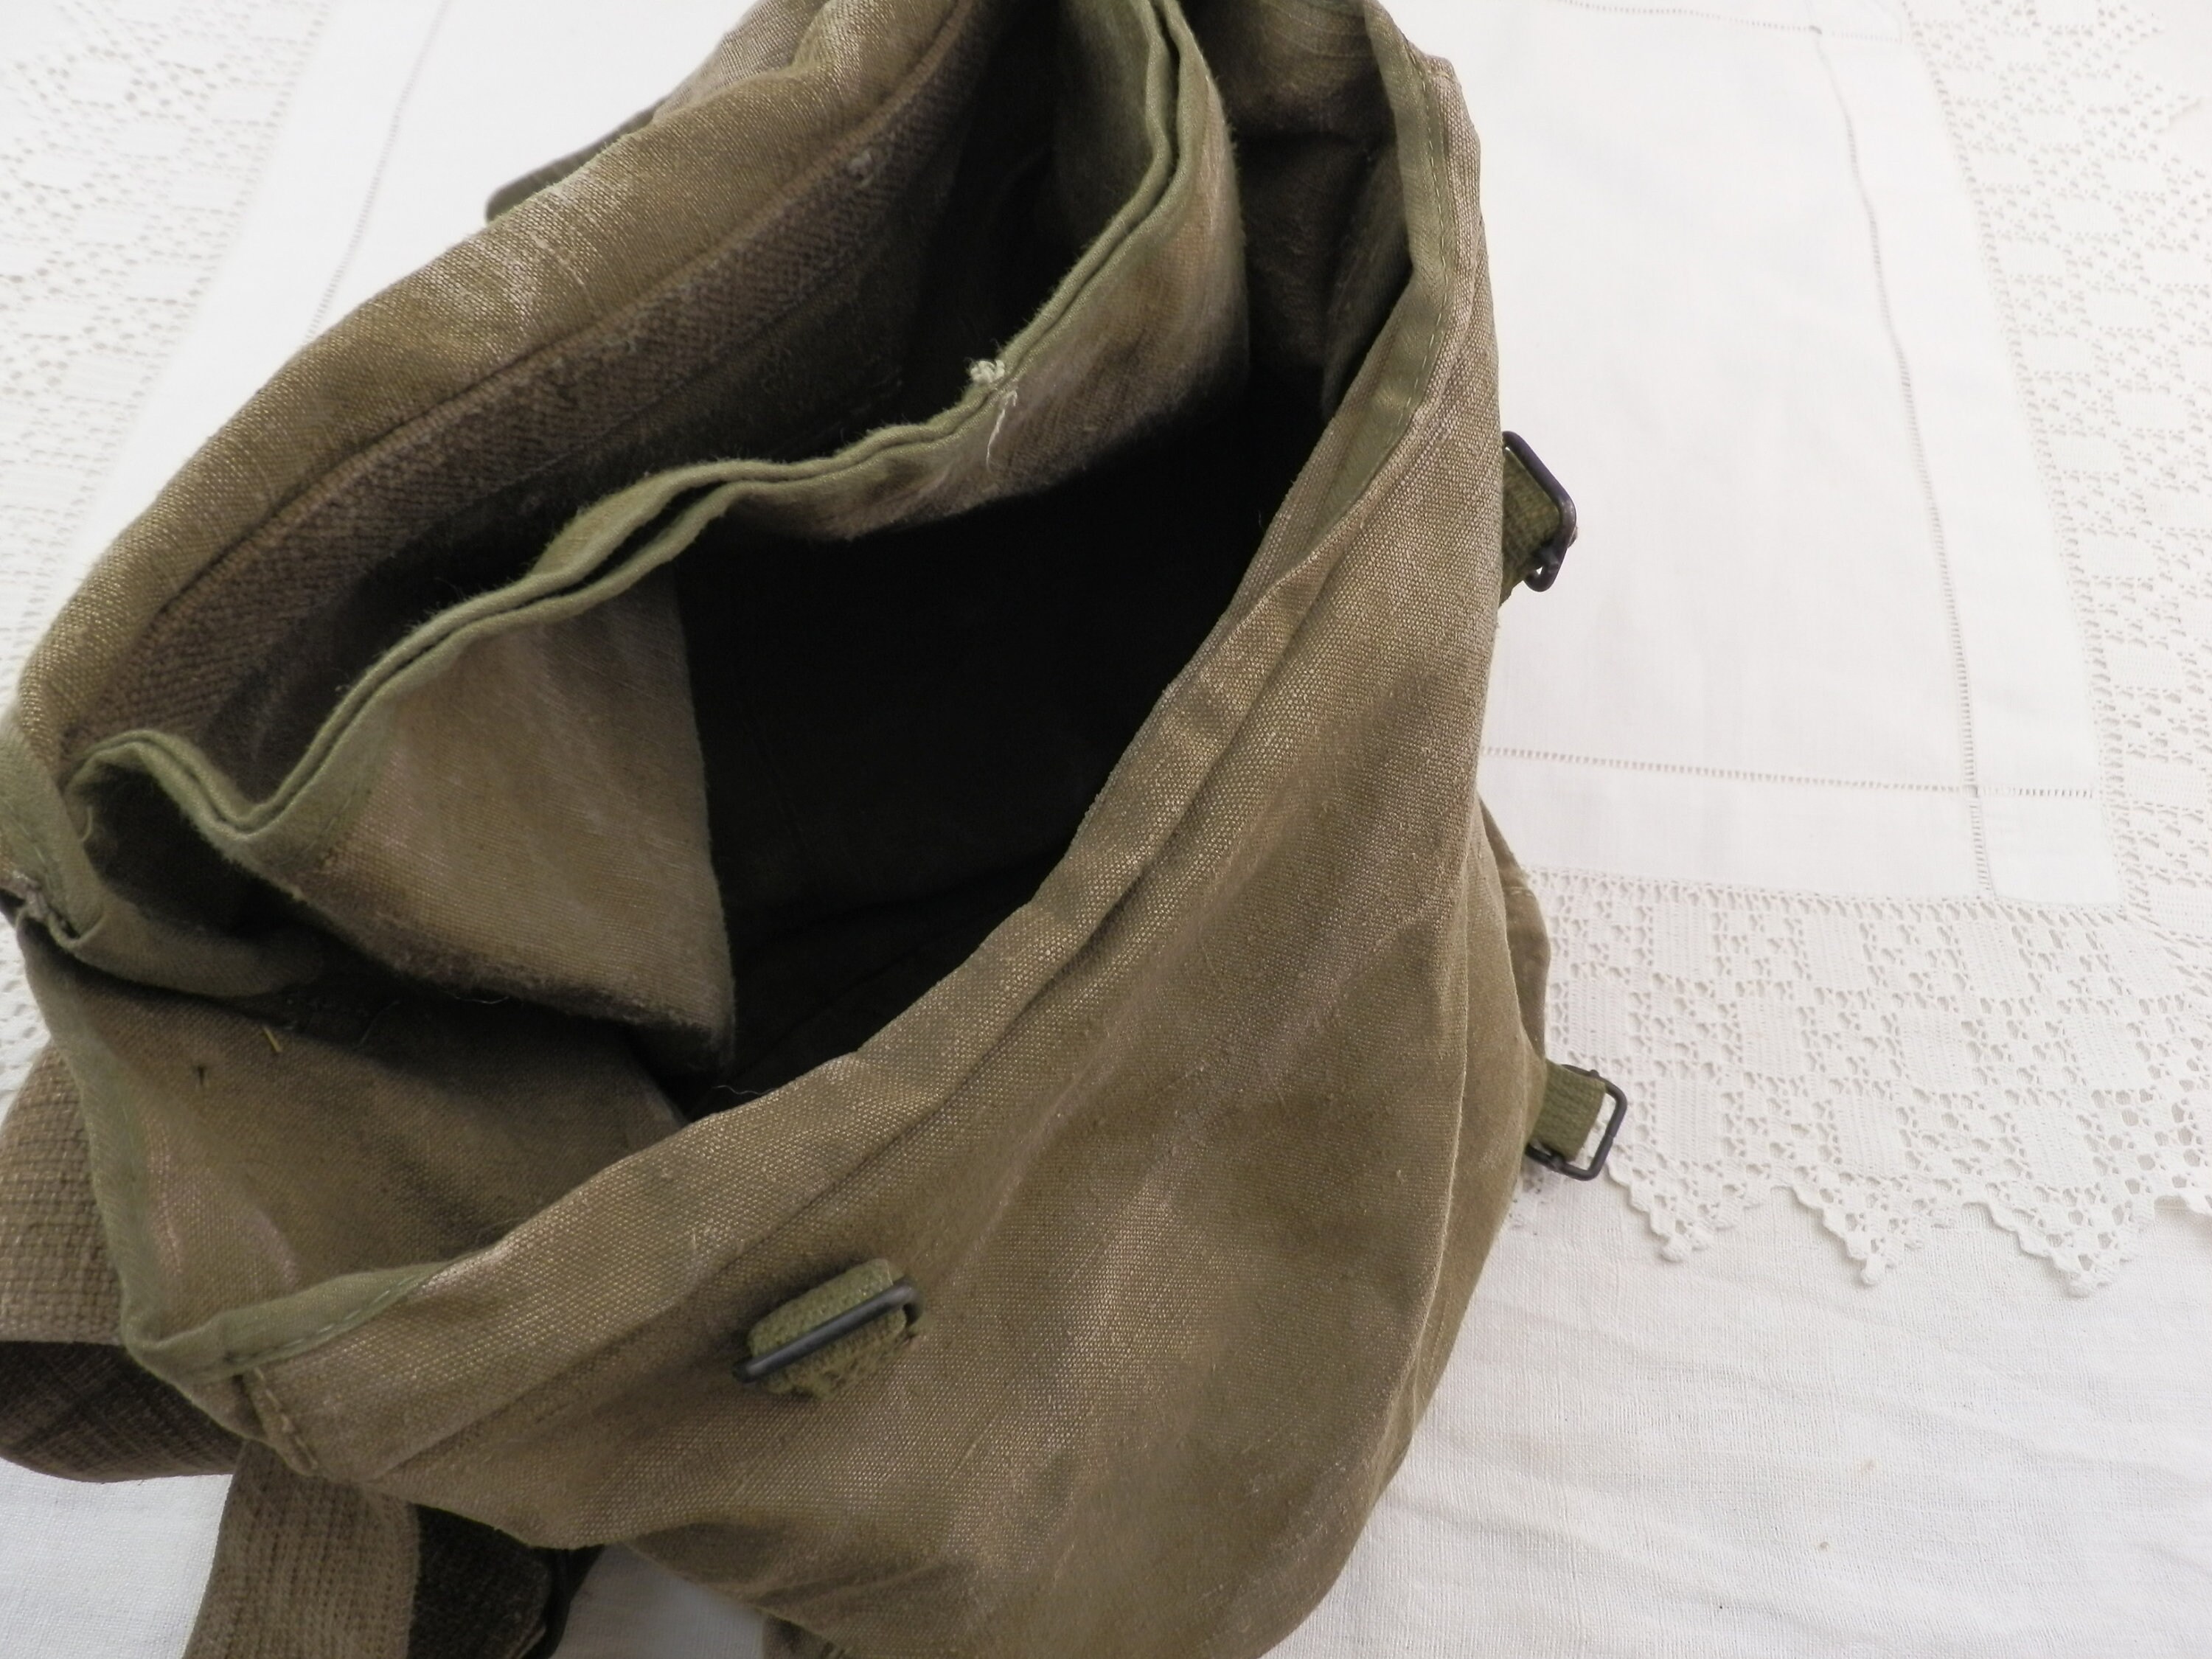 Gaston tool bag - Ecru I Messenger Bag I Made in France